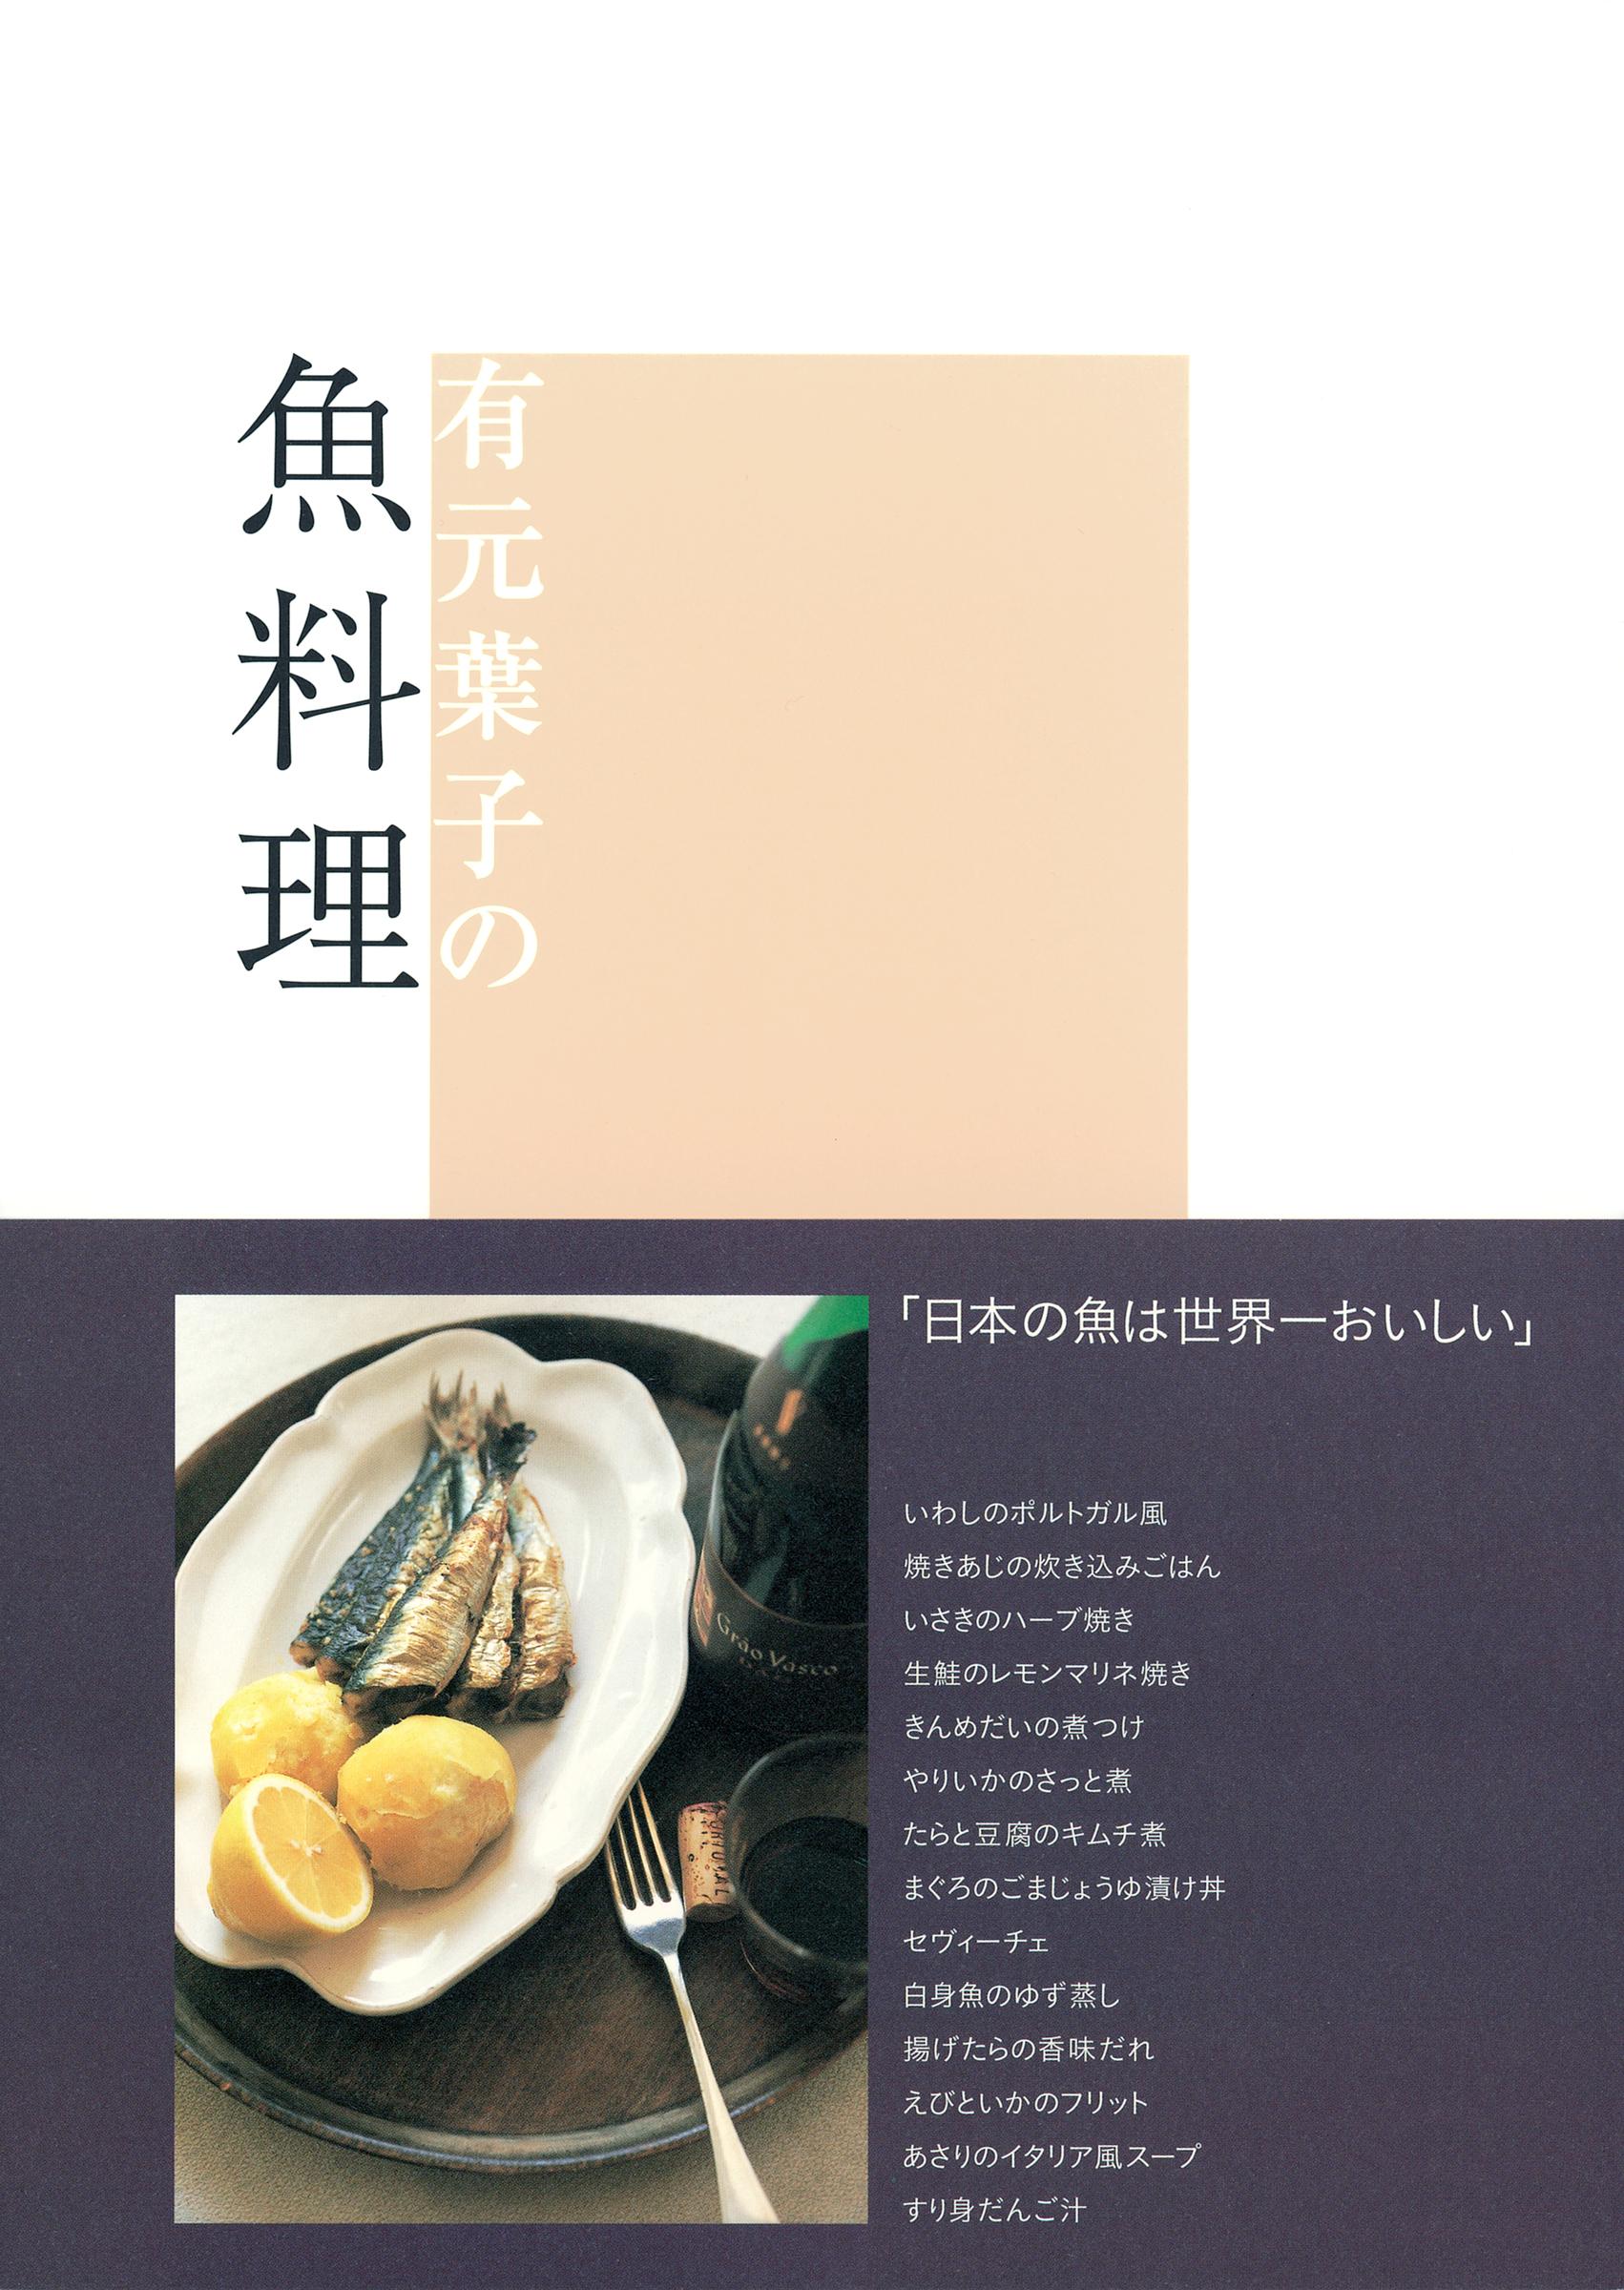 有元葉子の魚料理